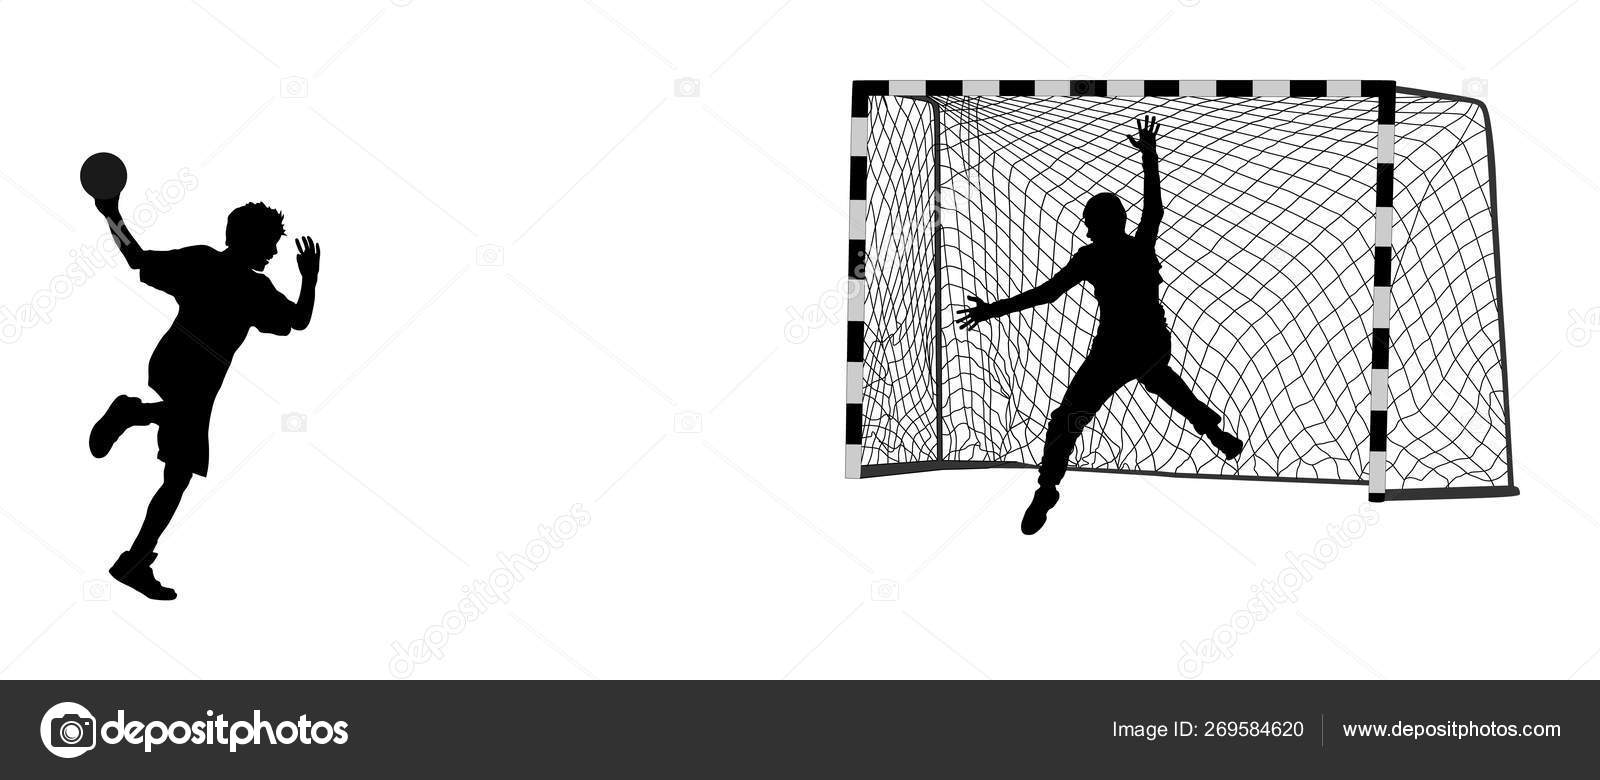 ハンドボール サッカー ゴールキーパーシルエットベクトル ネット分離 ハンドボール選手 攻撃シャットペナルティイラスト エレガントなボディスポーツフィギュアシャドウ ダイナミックなアスリートマンハンドボール選手のアクション ストックベクター C Dovla9